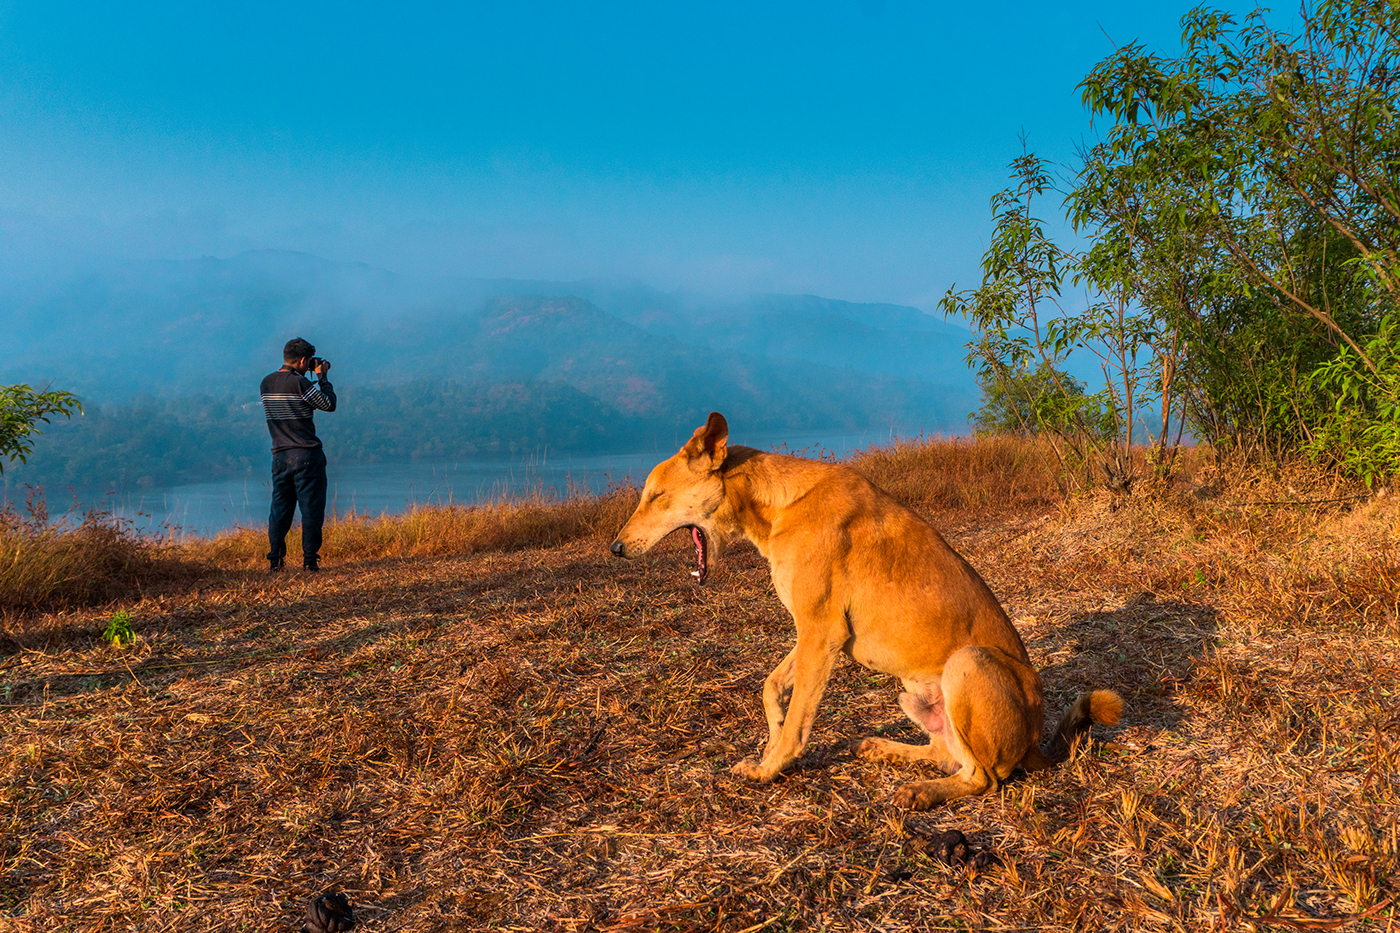 dog tapola landscape photography nature photography mountains lakes india tour MUMBAI dog portrait